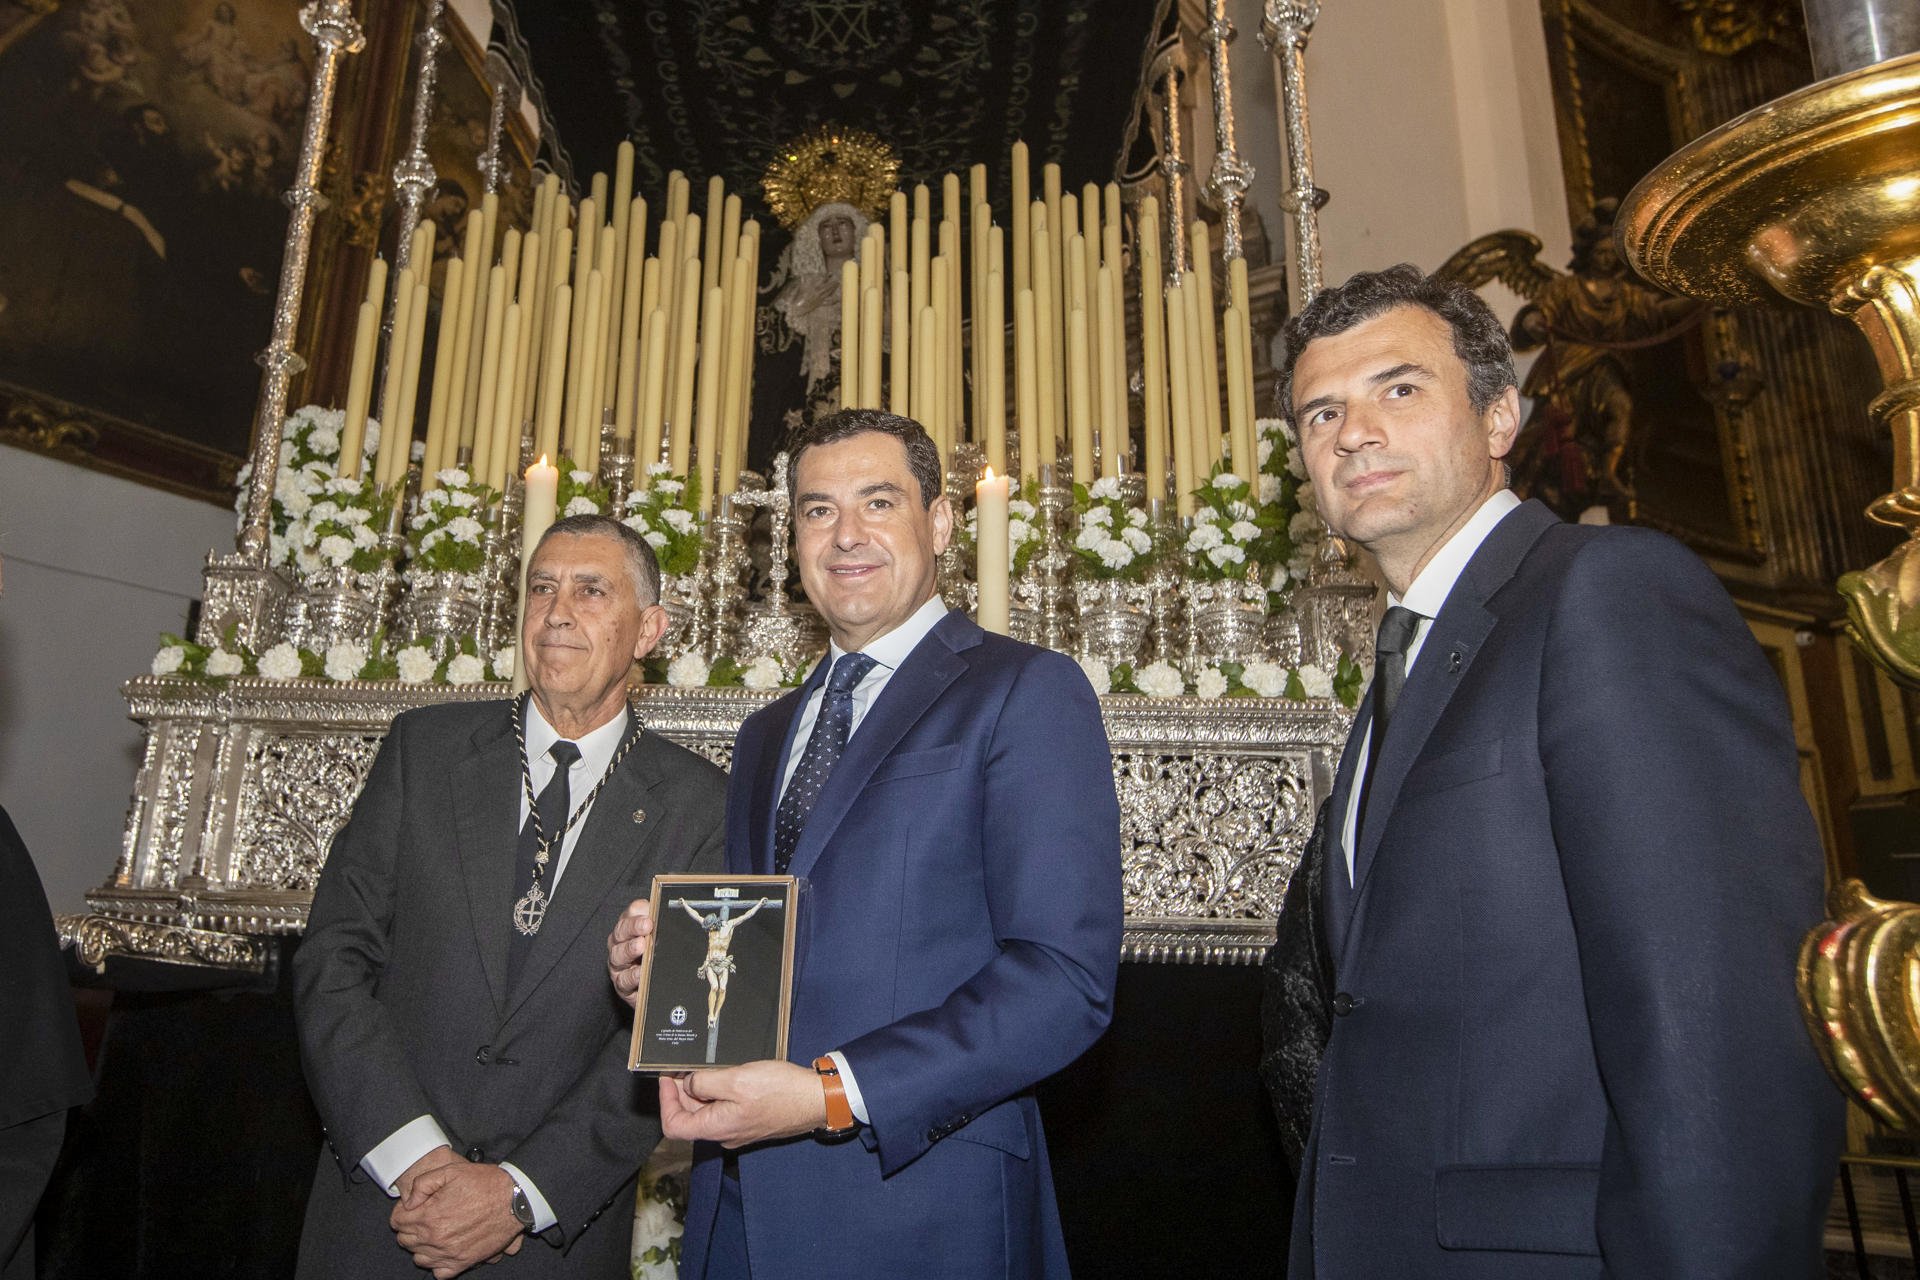 Andalucía se quejará formalmente del gag de TV3 sobre la Virgen del Rocío